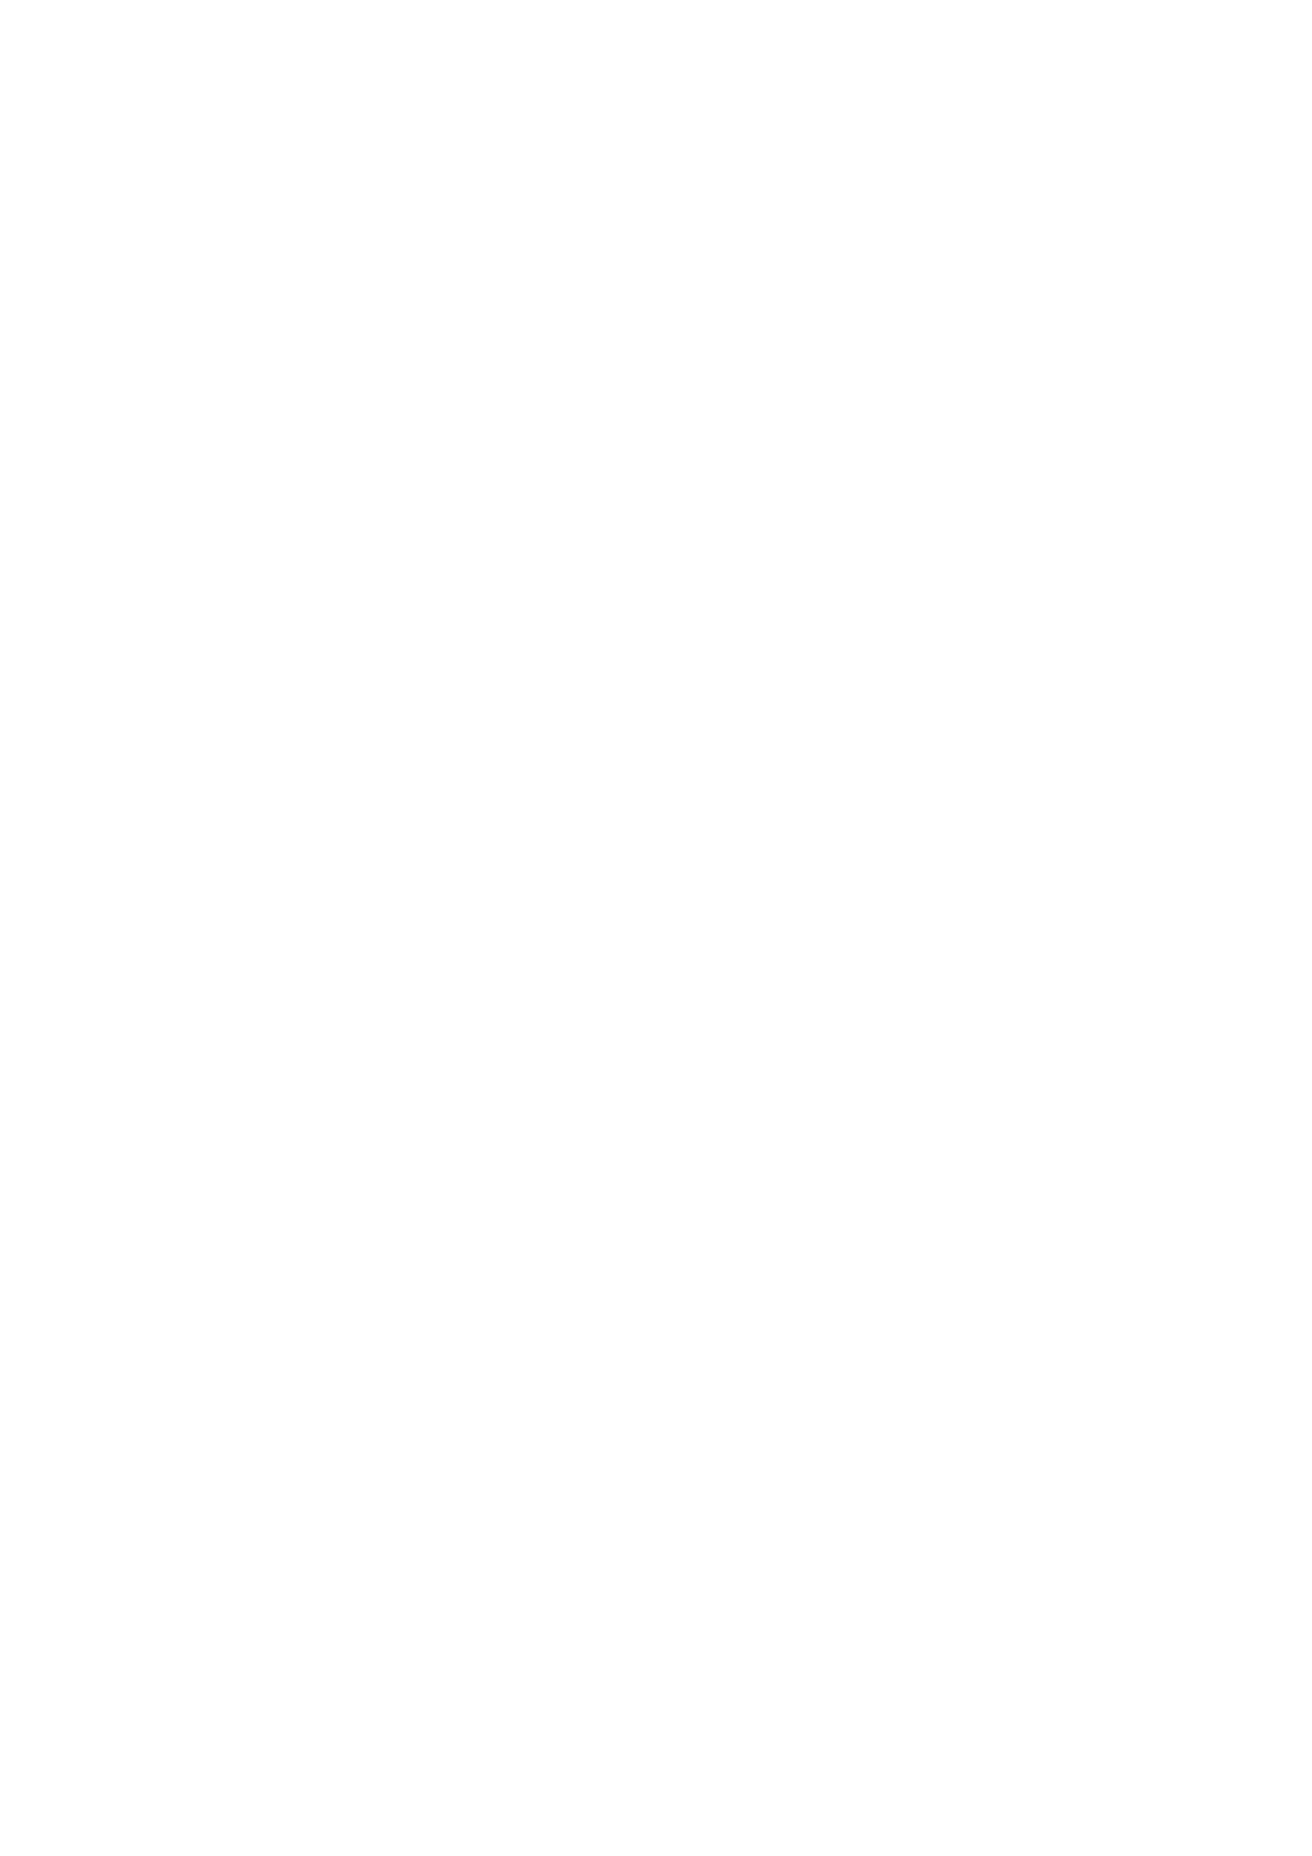 Ломанов Андрей Анатольевич. Науково-практична конференція з міжнародною участю "Урологія, андрологія, нефрологія - досягнення, проблеми, шляхи вирішення" 9 - 10 вересня 2021 року